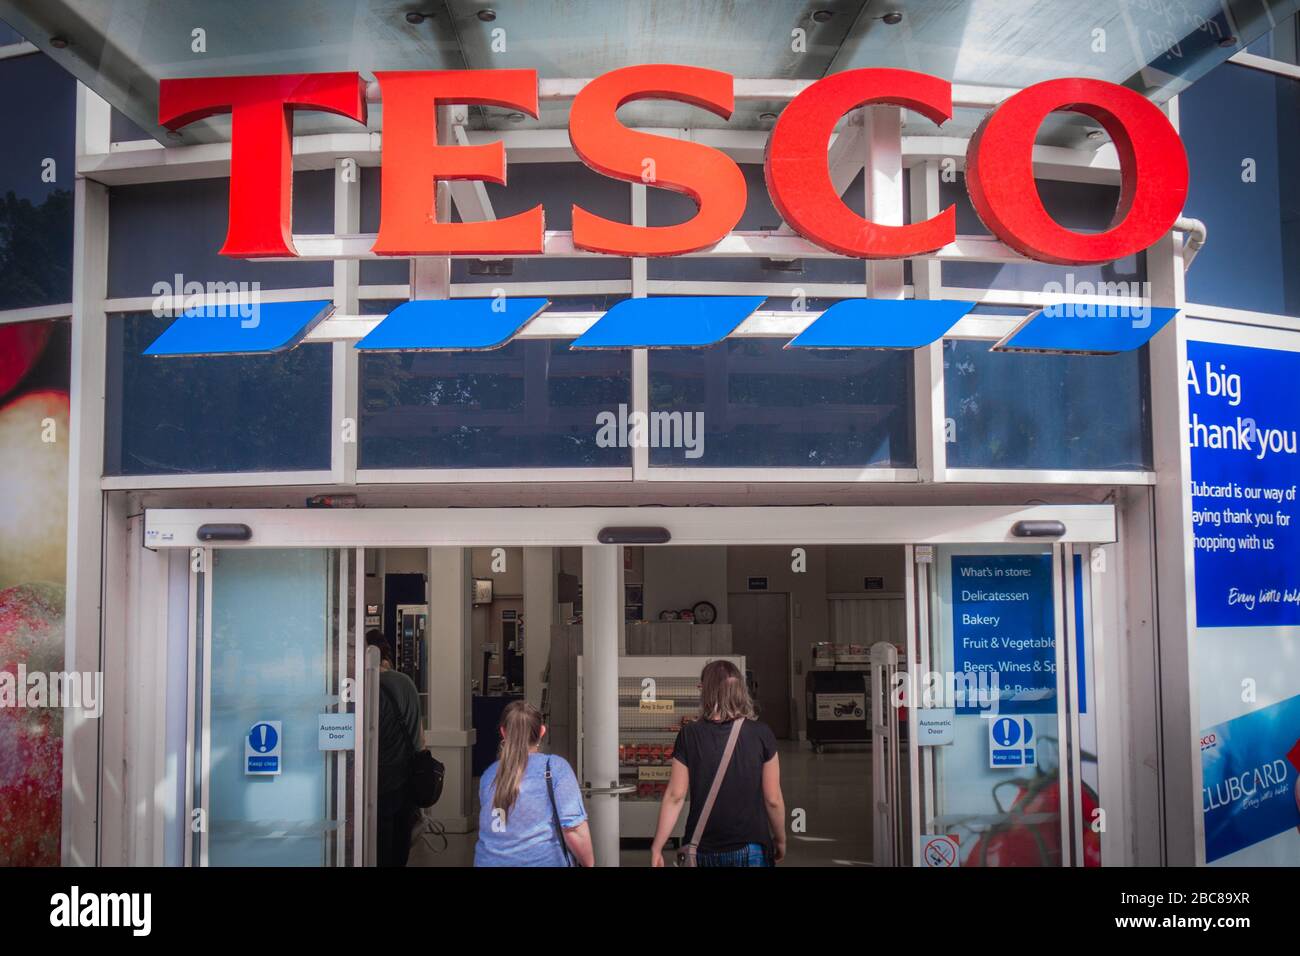 Tesco- catena di supermercati inglesi di grandi dimensioni- logo esterno / segnaletica- Londra Foto Stock